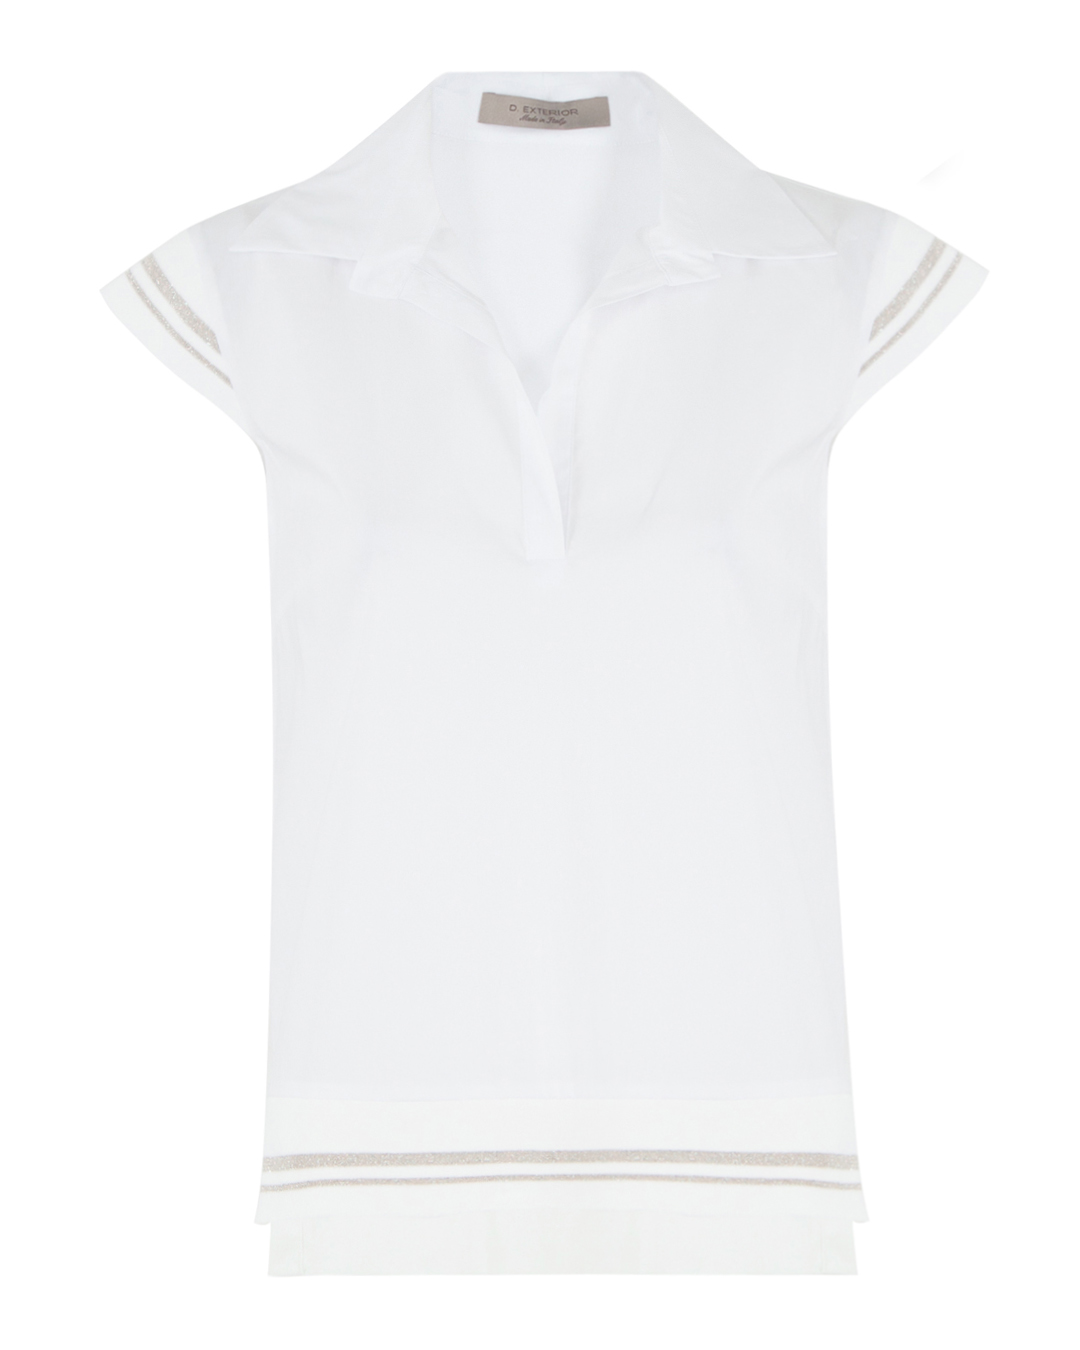 блуза D.EXTERIOR 58588 белый xl, размер xl